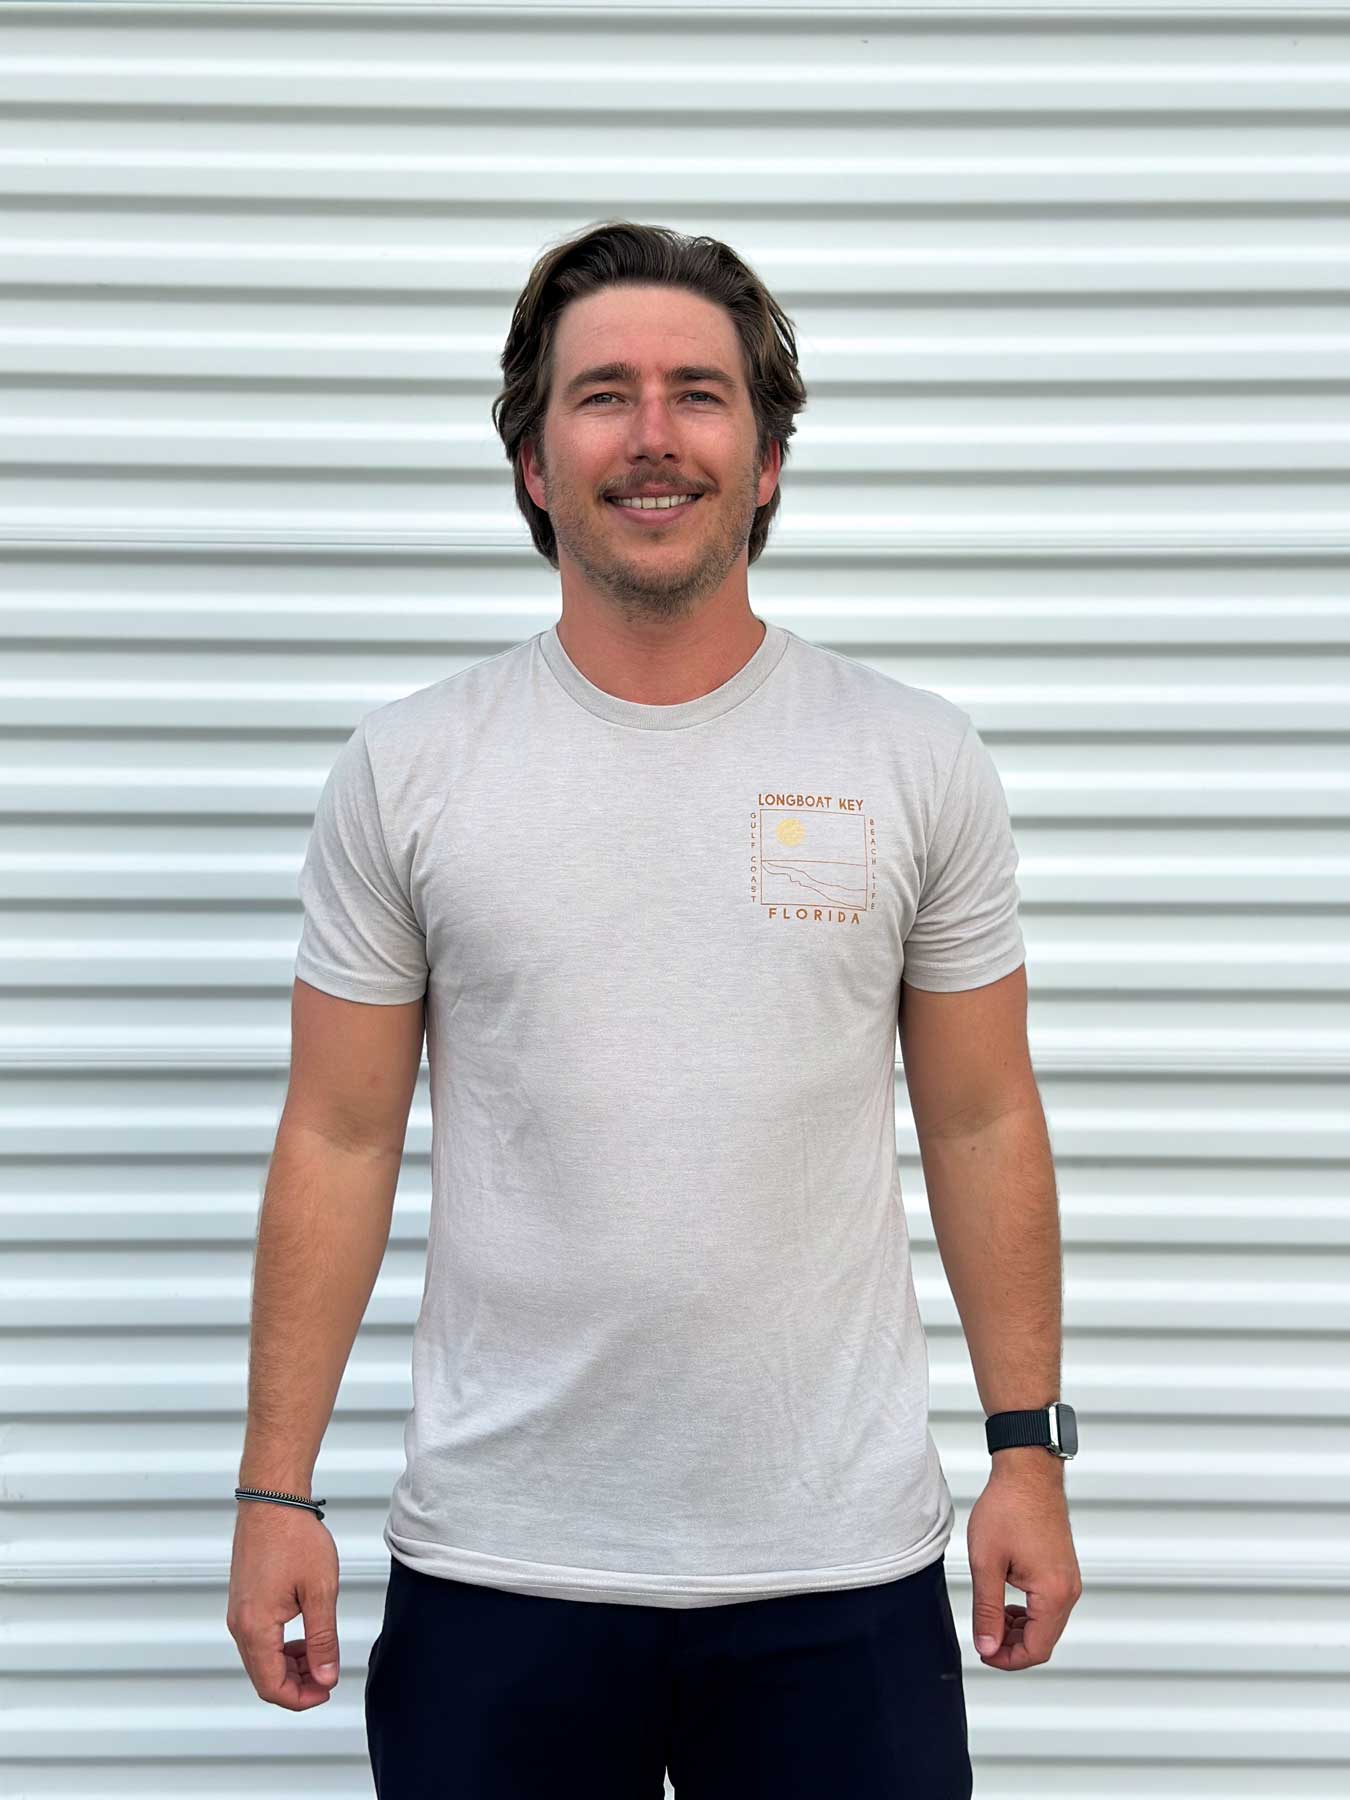 Techstyles: Men's Warren Longboat Key Legend Tri-Blend T-Shirt